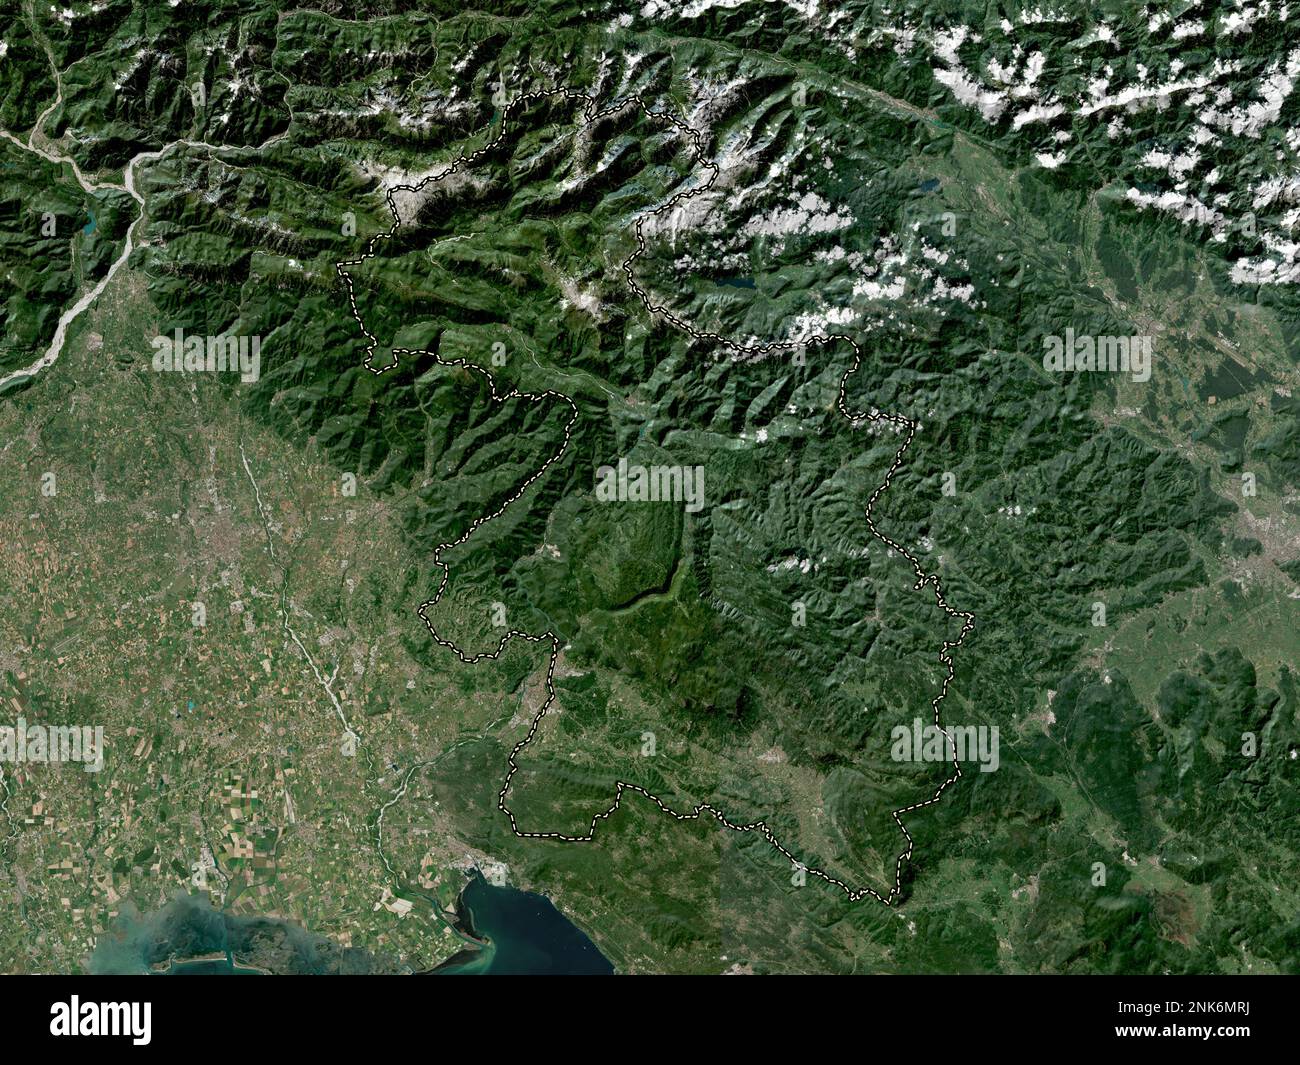 Goriska, regione statistica della Slovenia. Mappa satellitare a bassa risoluzione Foto Stock